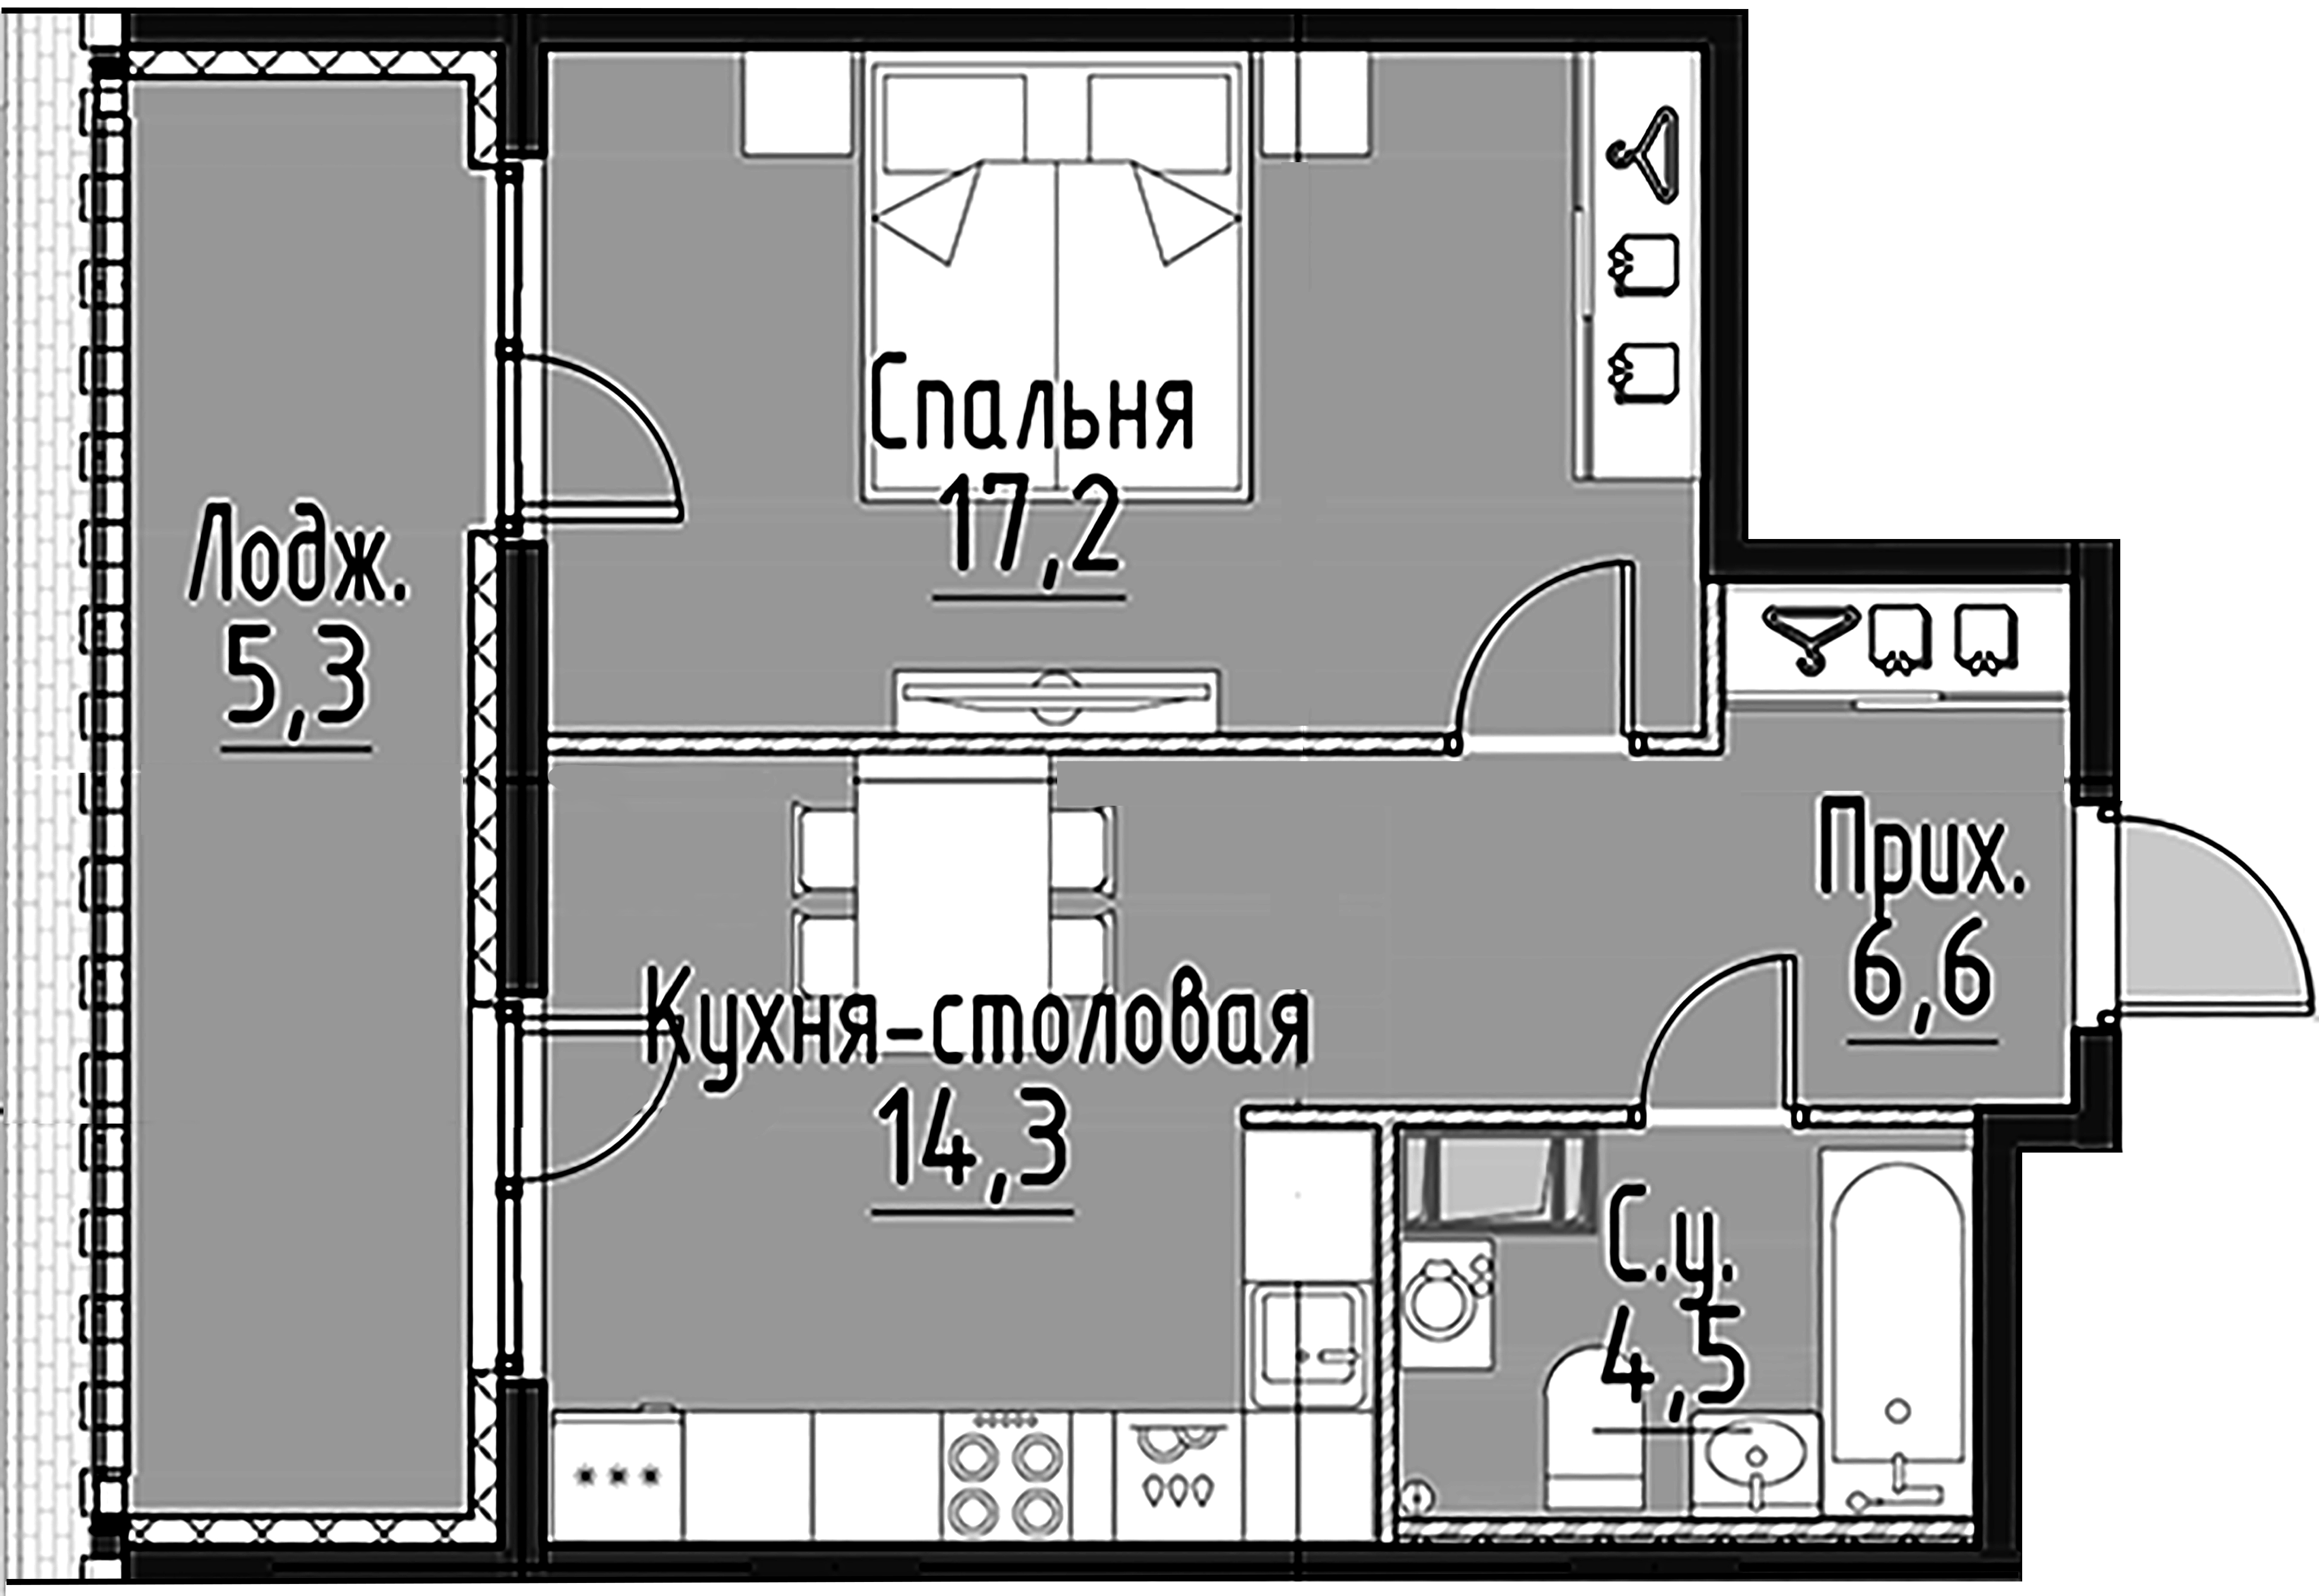 1-комнатная квартира  №80 в Моисеенко, 10: 42.5 м², этаж 6 - купить в Санкт-Петербурге